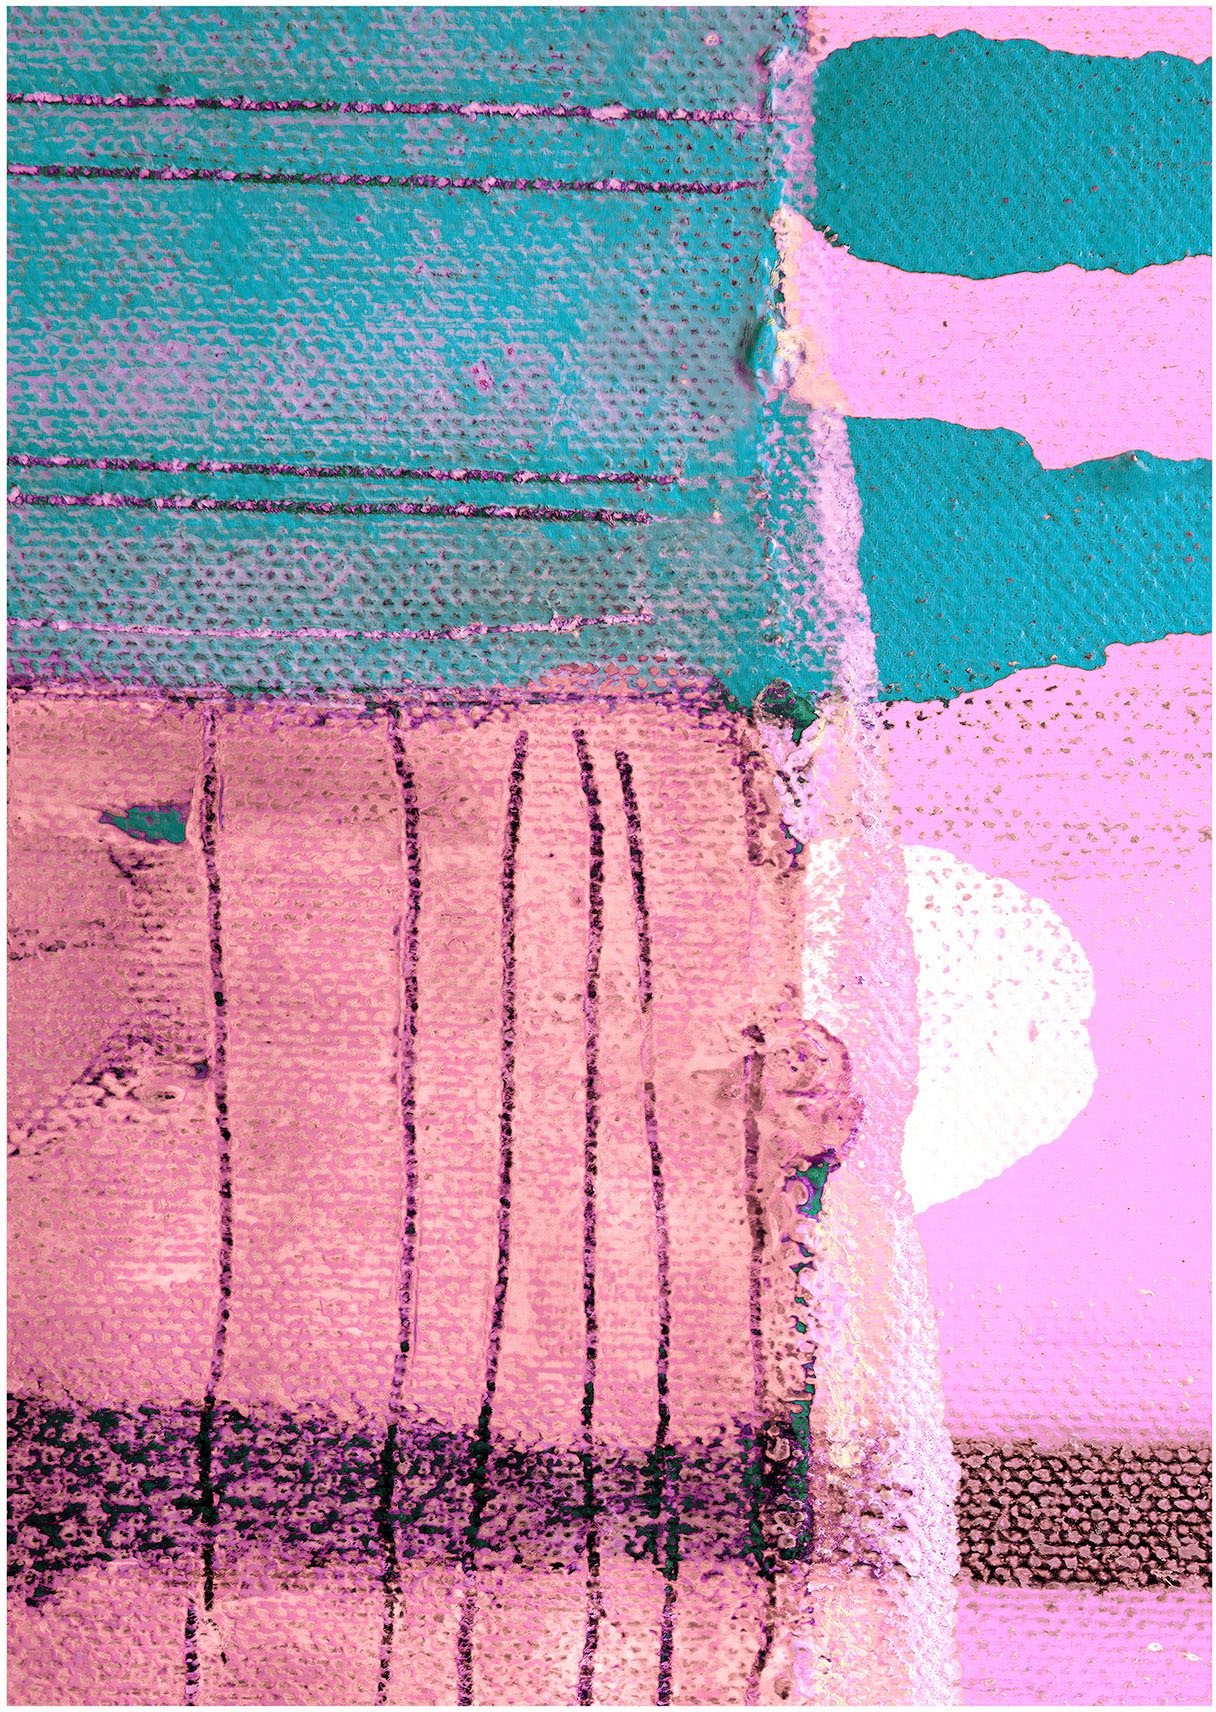 Komar Wandbild »Pinky Allegro«, (1 St.), Deutsches Premium-Poster Fotopapier mit seidenmatter Oberfläche und hoher Lichtbeständigkeit. Für fotorealistische Drucke mit gestochen scharfen Details und hervorragender Farbbrillanz.